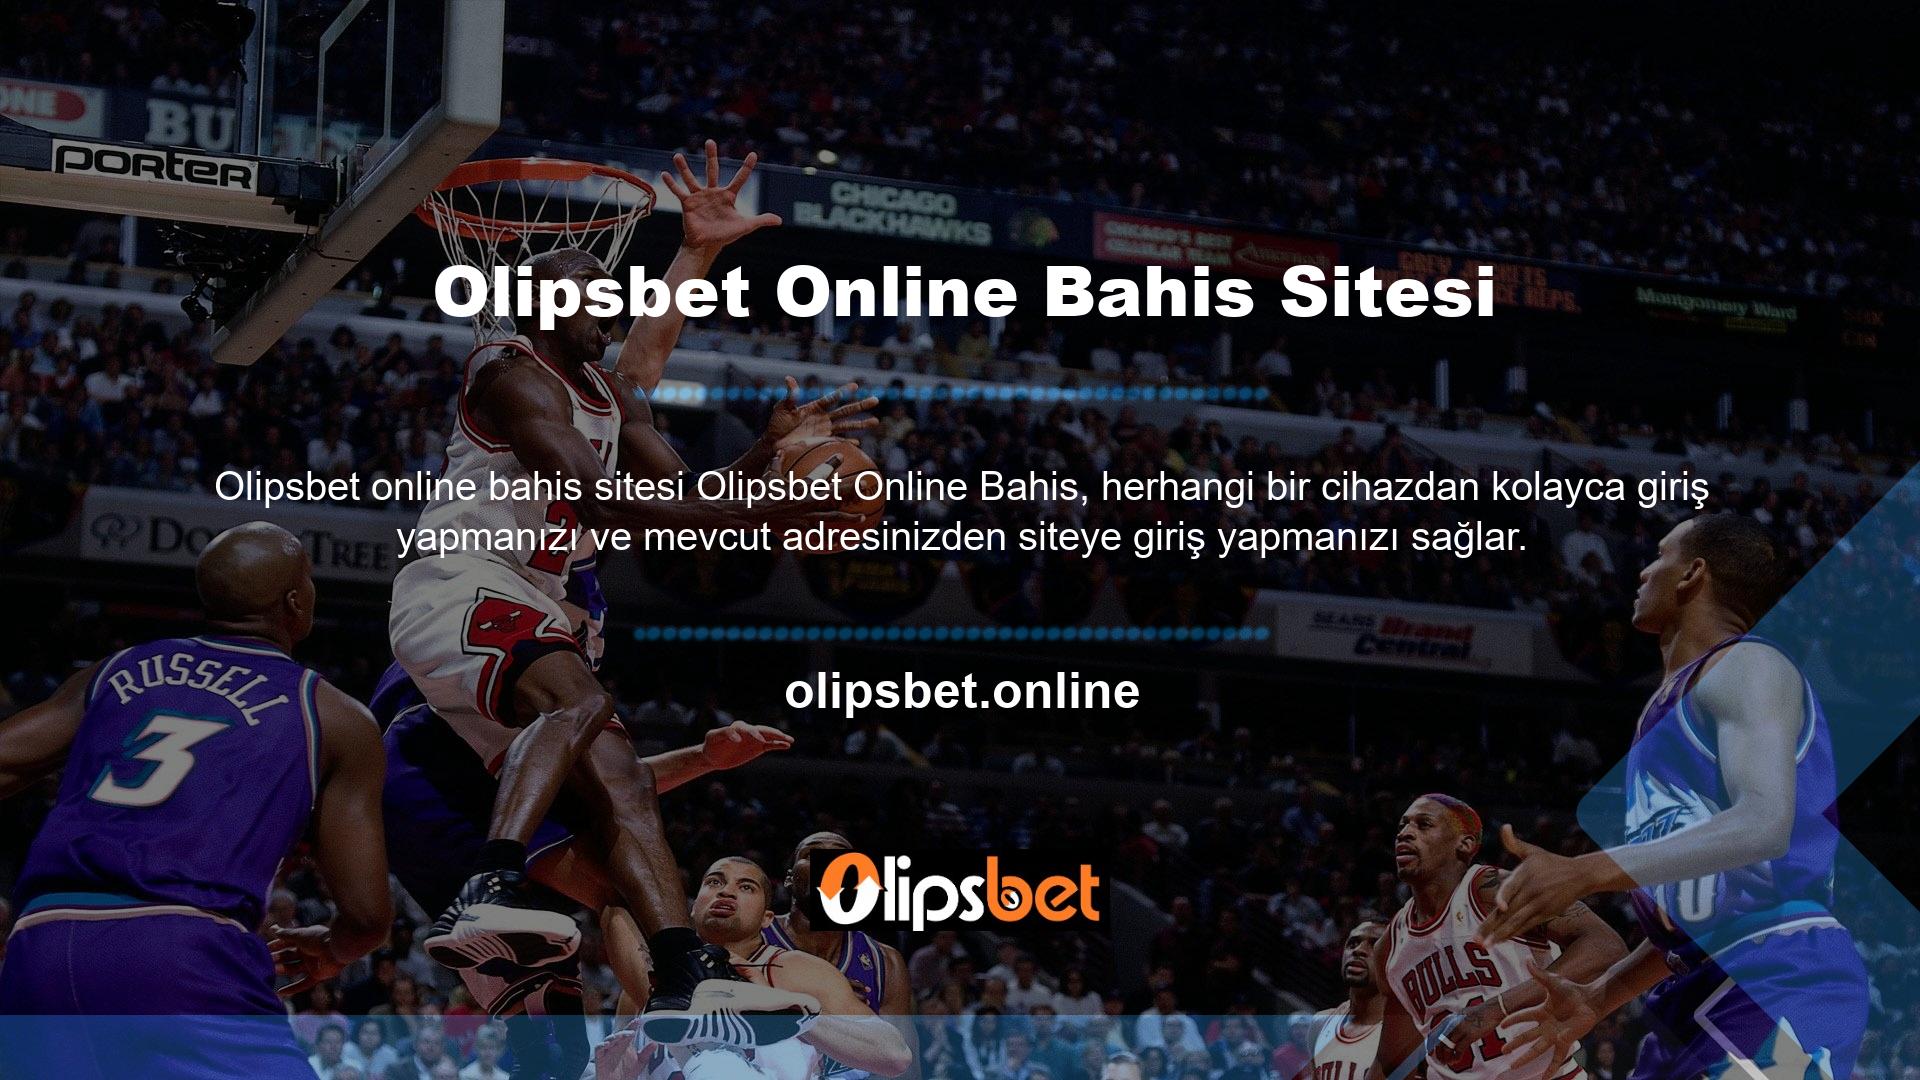 Sporun her alanında bahis takibi yapabileceğiniz Olipsbet, online bahis, canlı casino ve daha birçok seçeneği takip edebilirsiniz